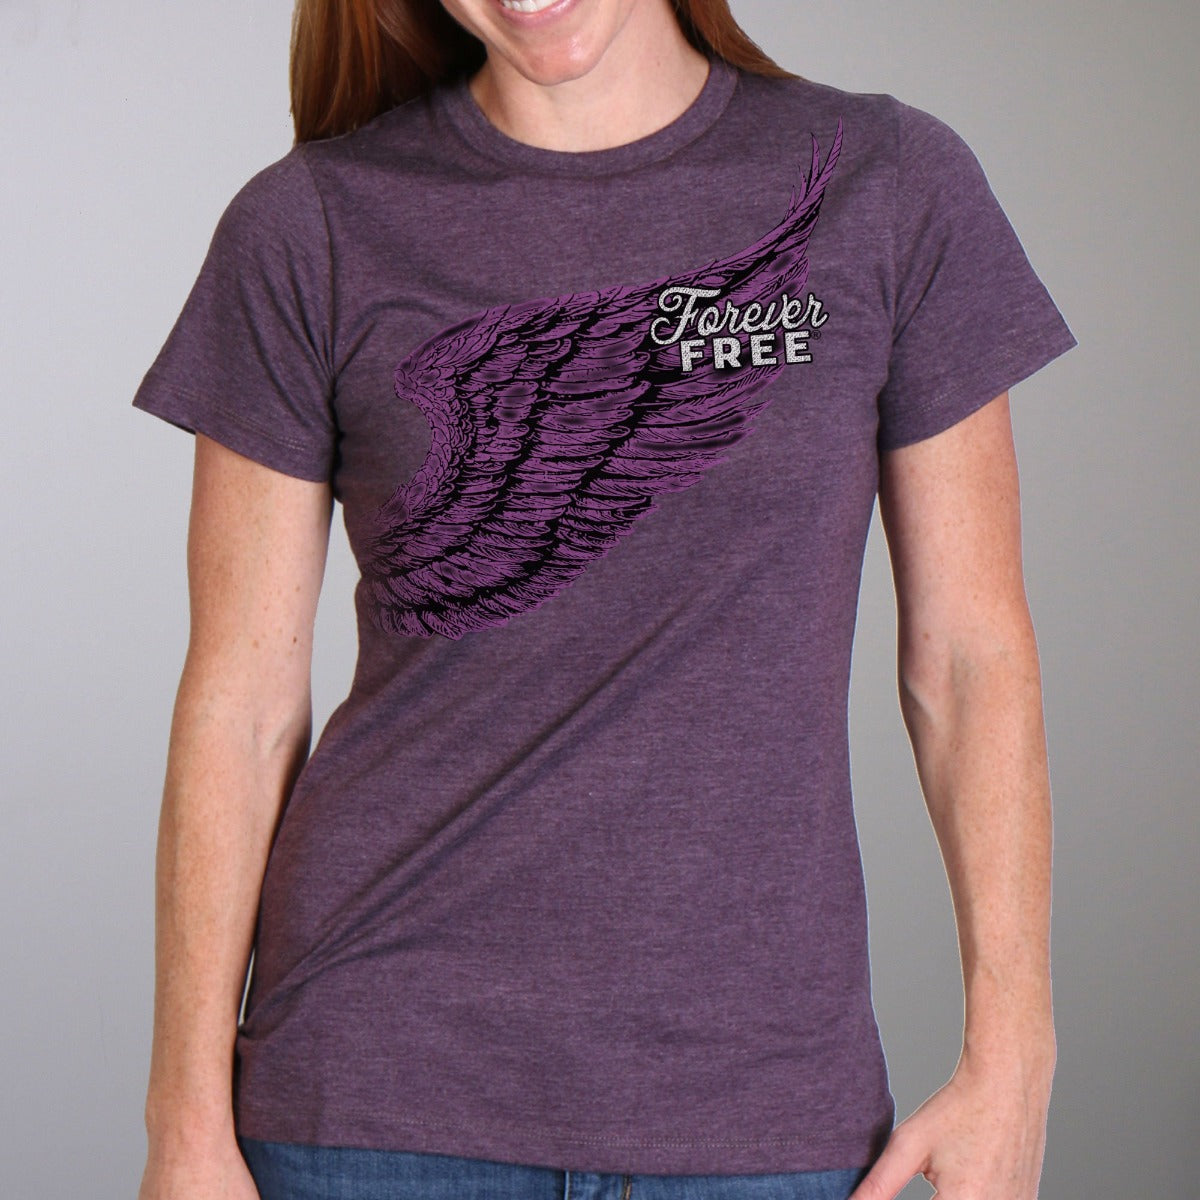 Hot Leathers Women's Full Cut Modern Angel Wings T-Shirt